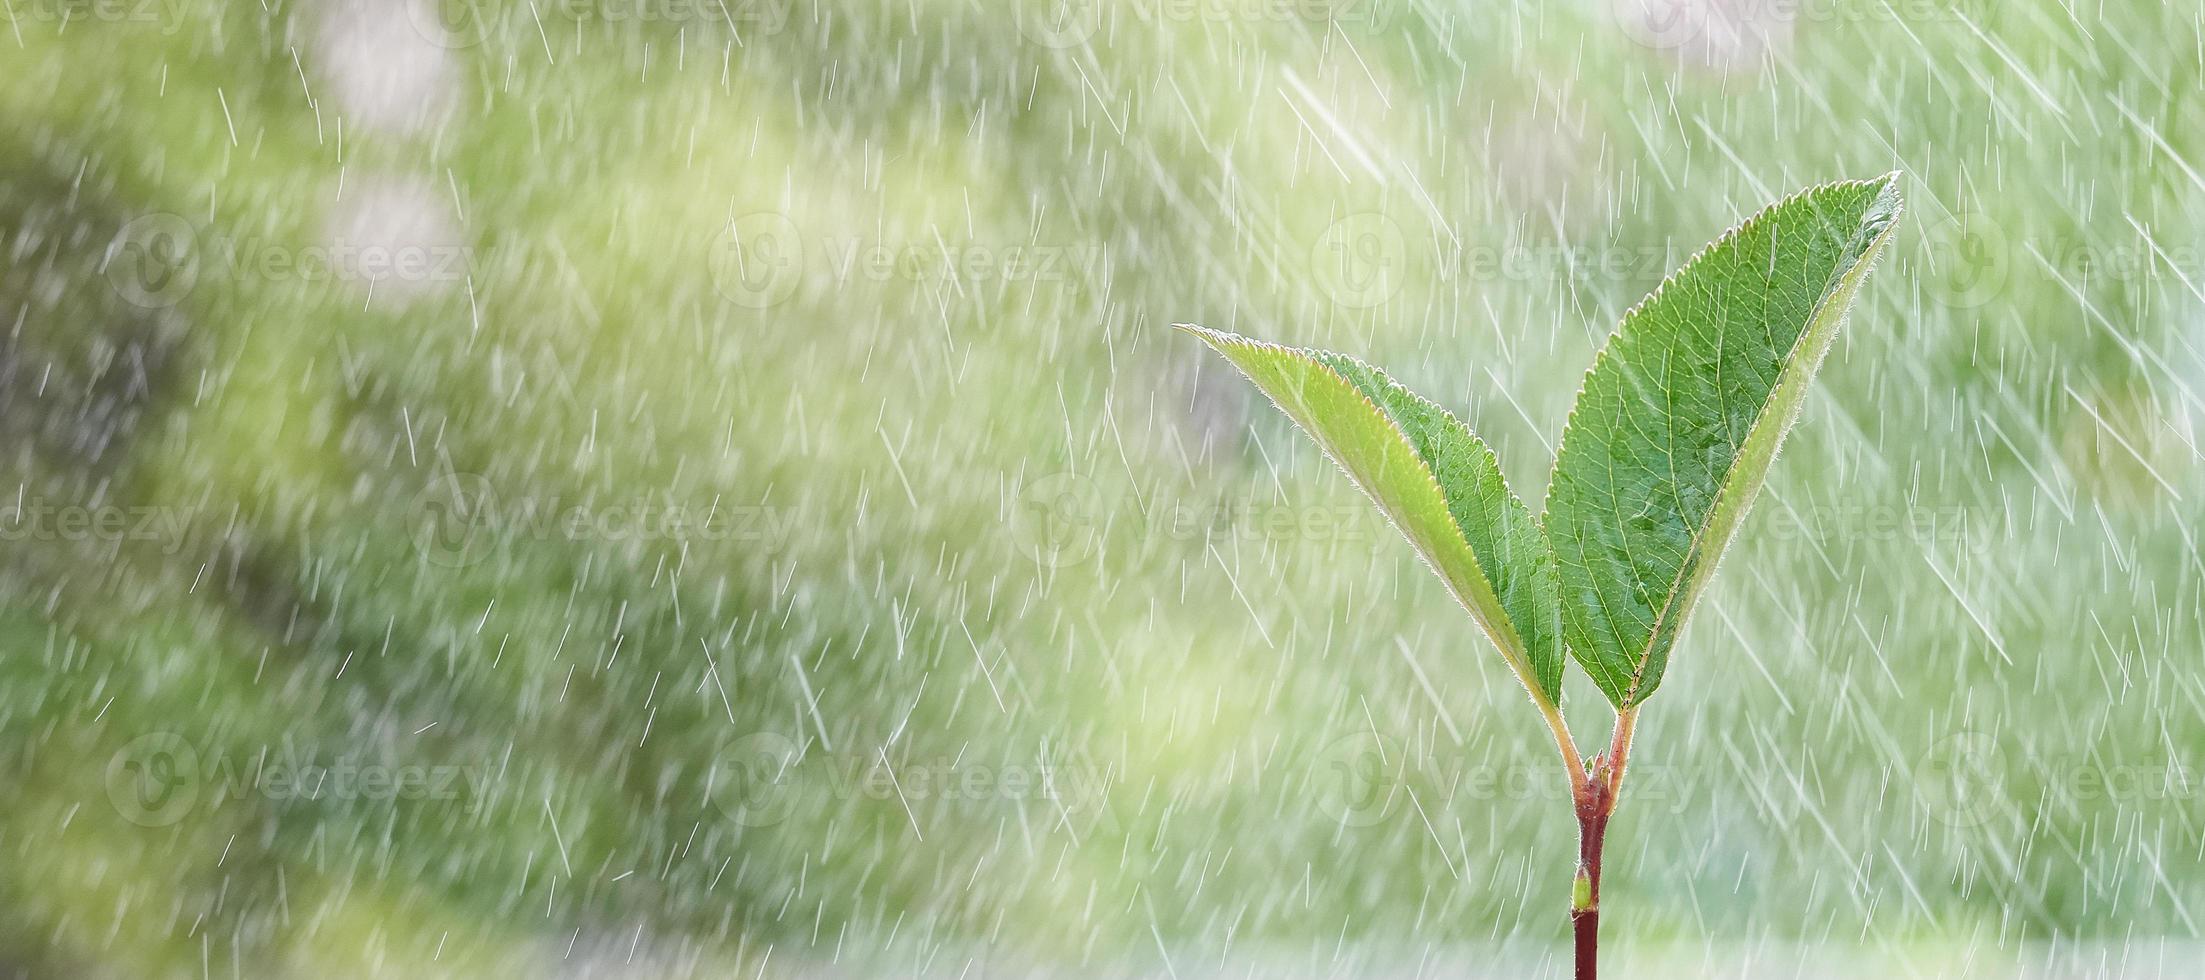 broto verde jovem na chuva, closeup. foto com espaço de cópia.